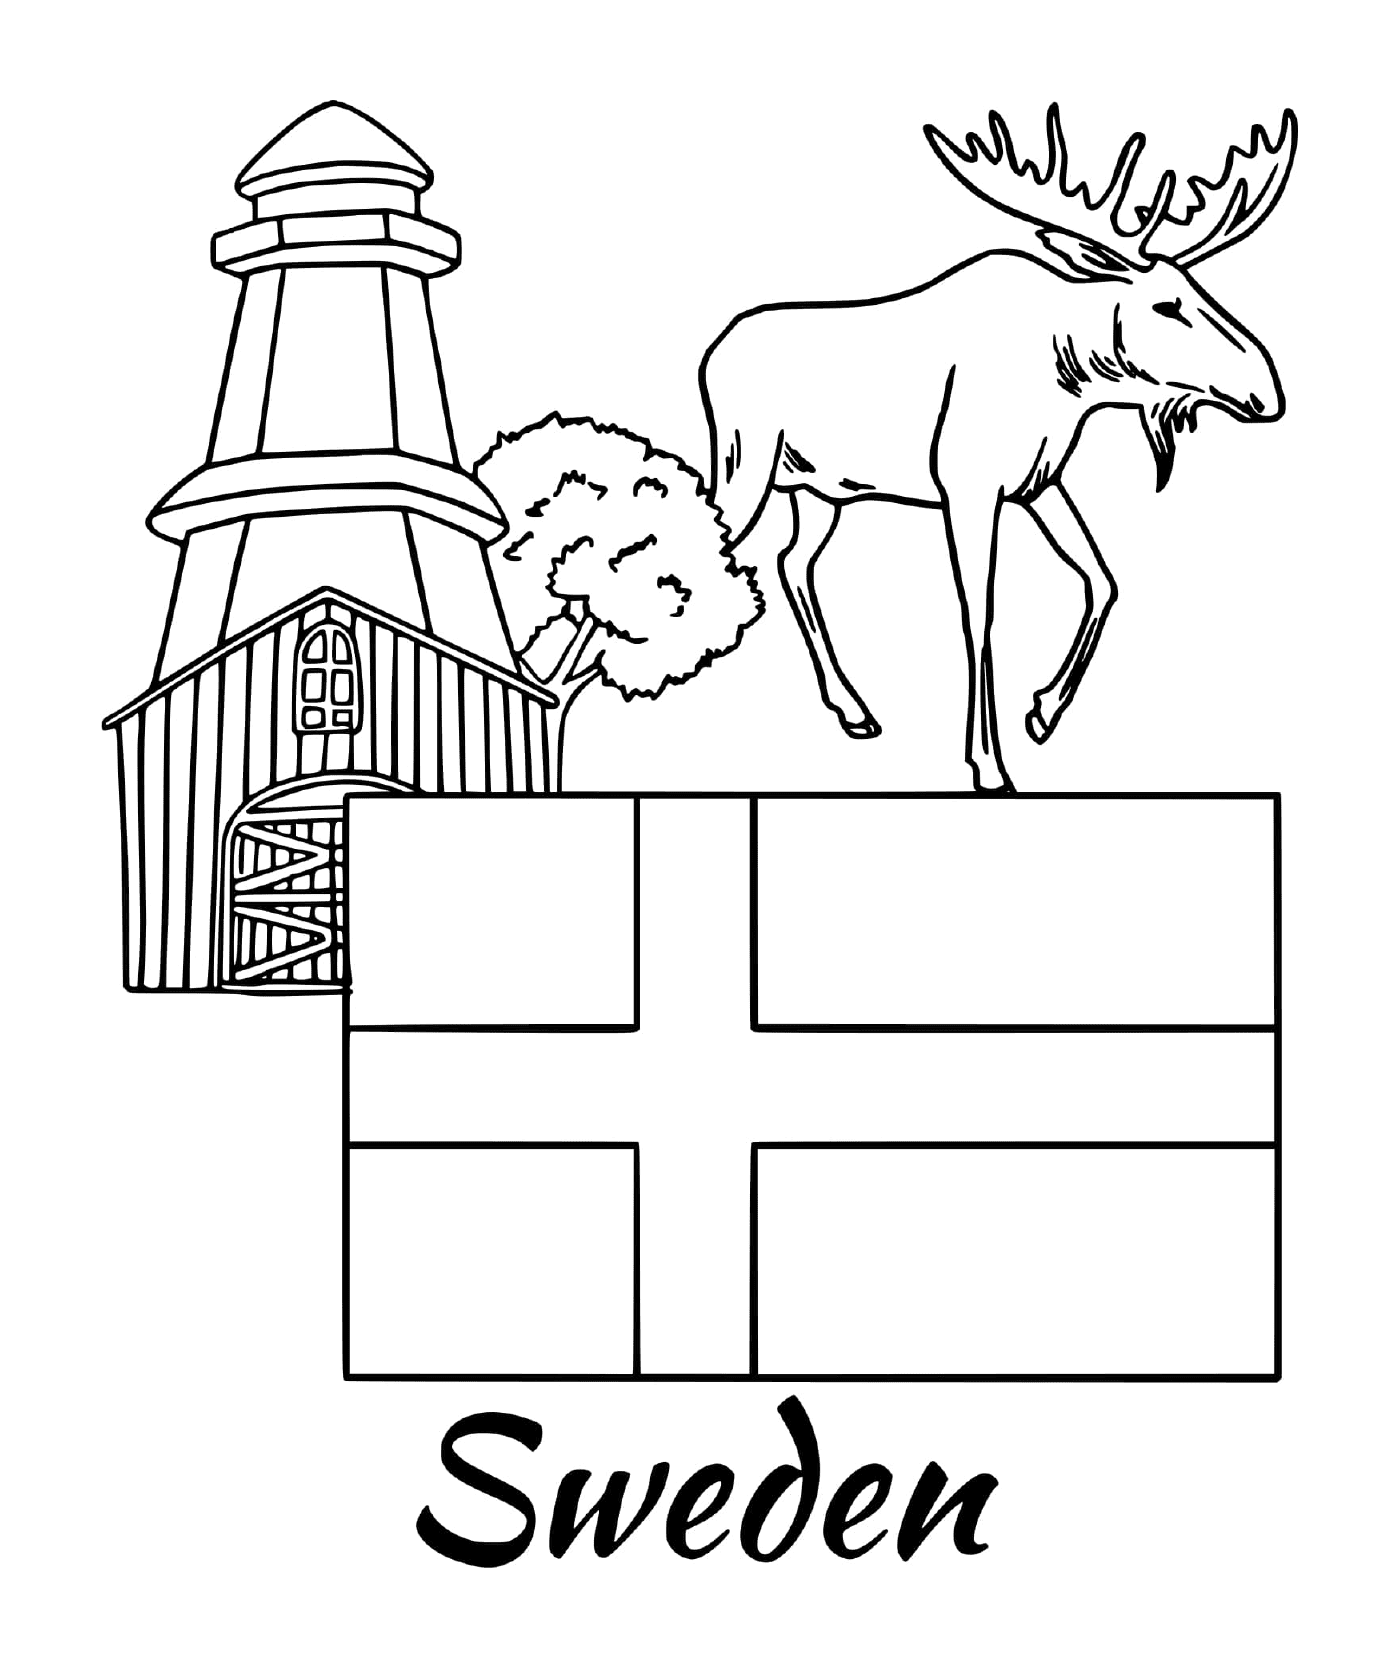  瑞典国旗,势头 